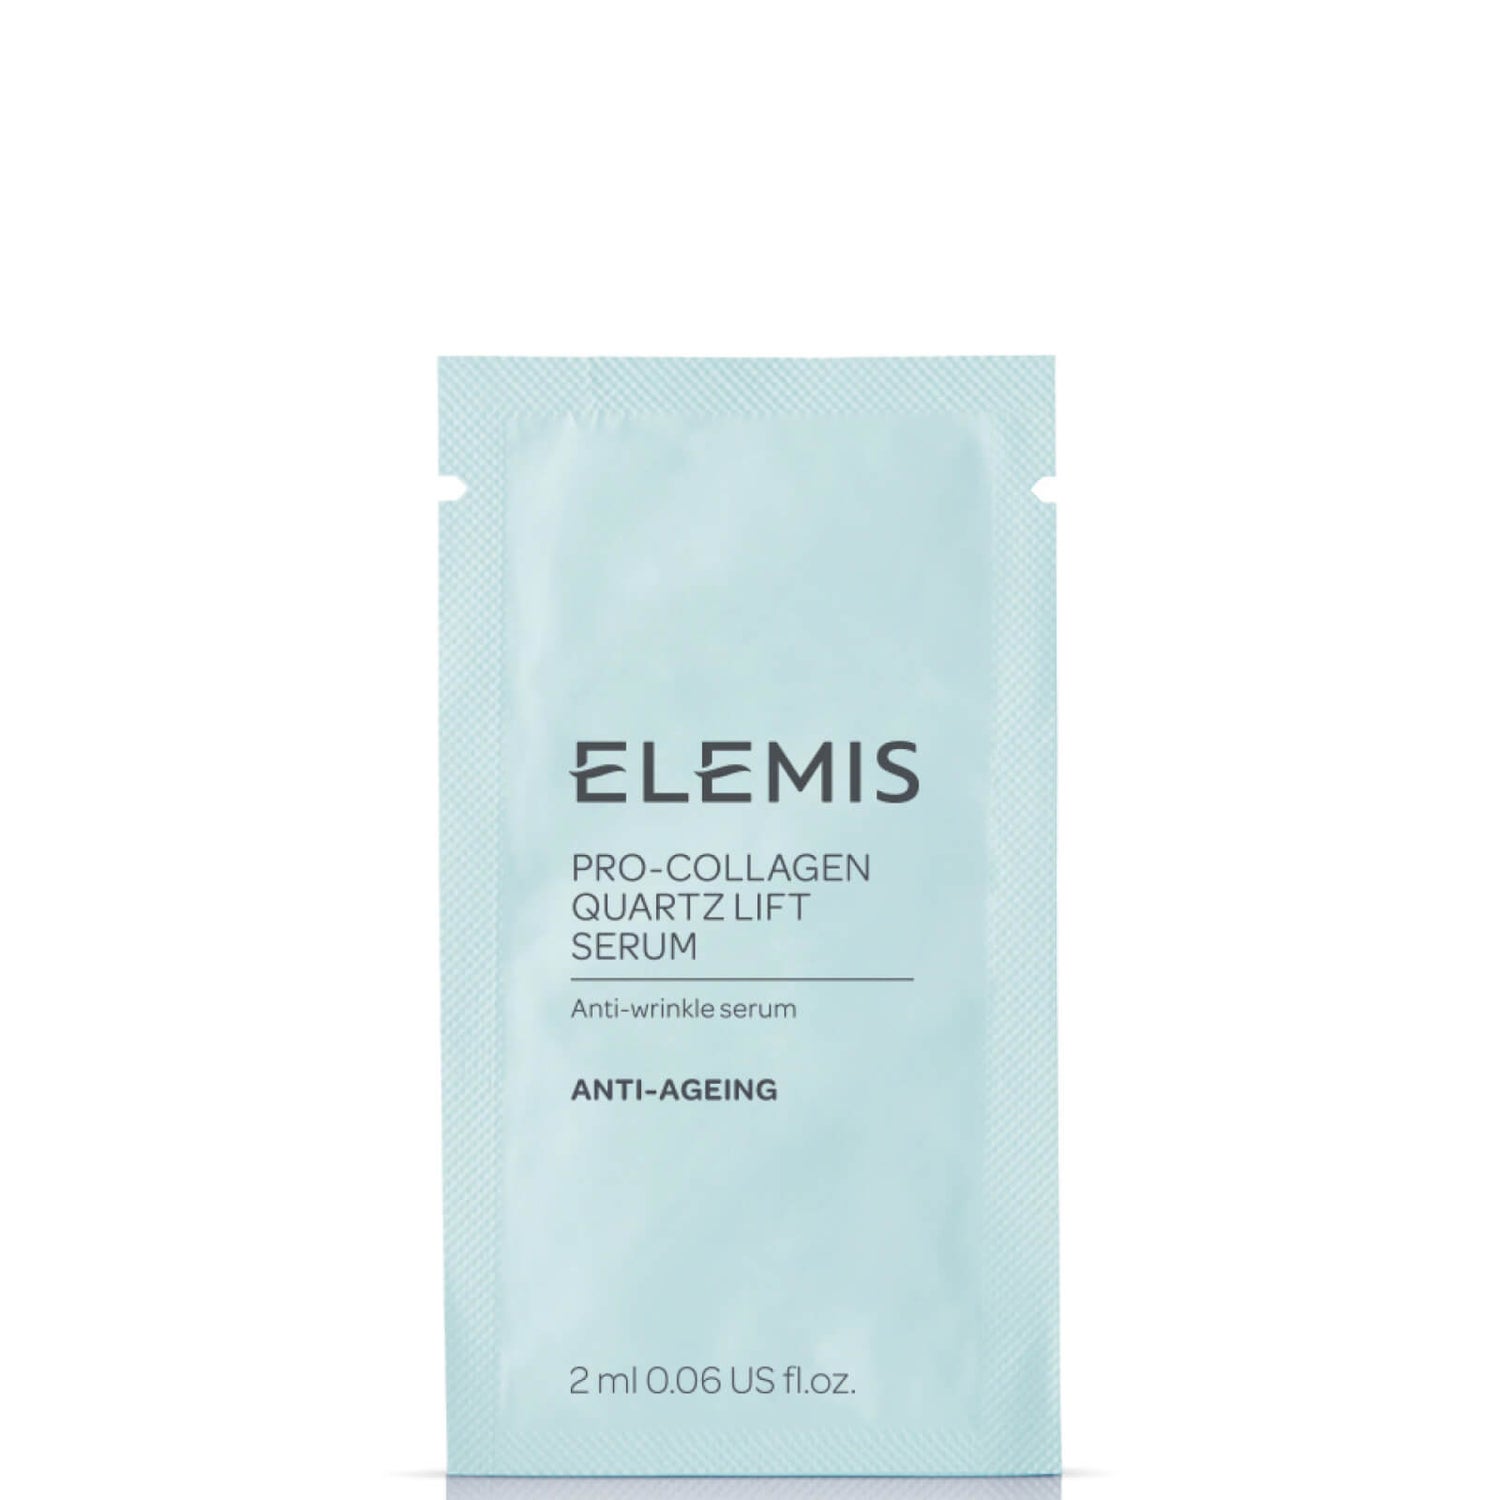 ELEMIS Pro-Collagen Quartz Lift Serum x1